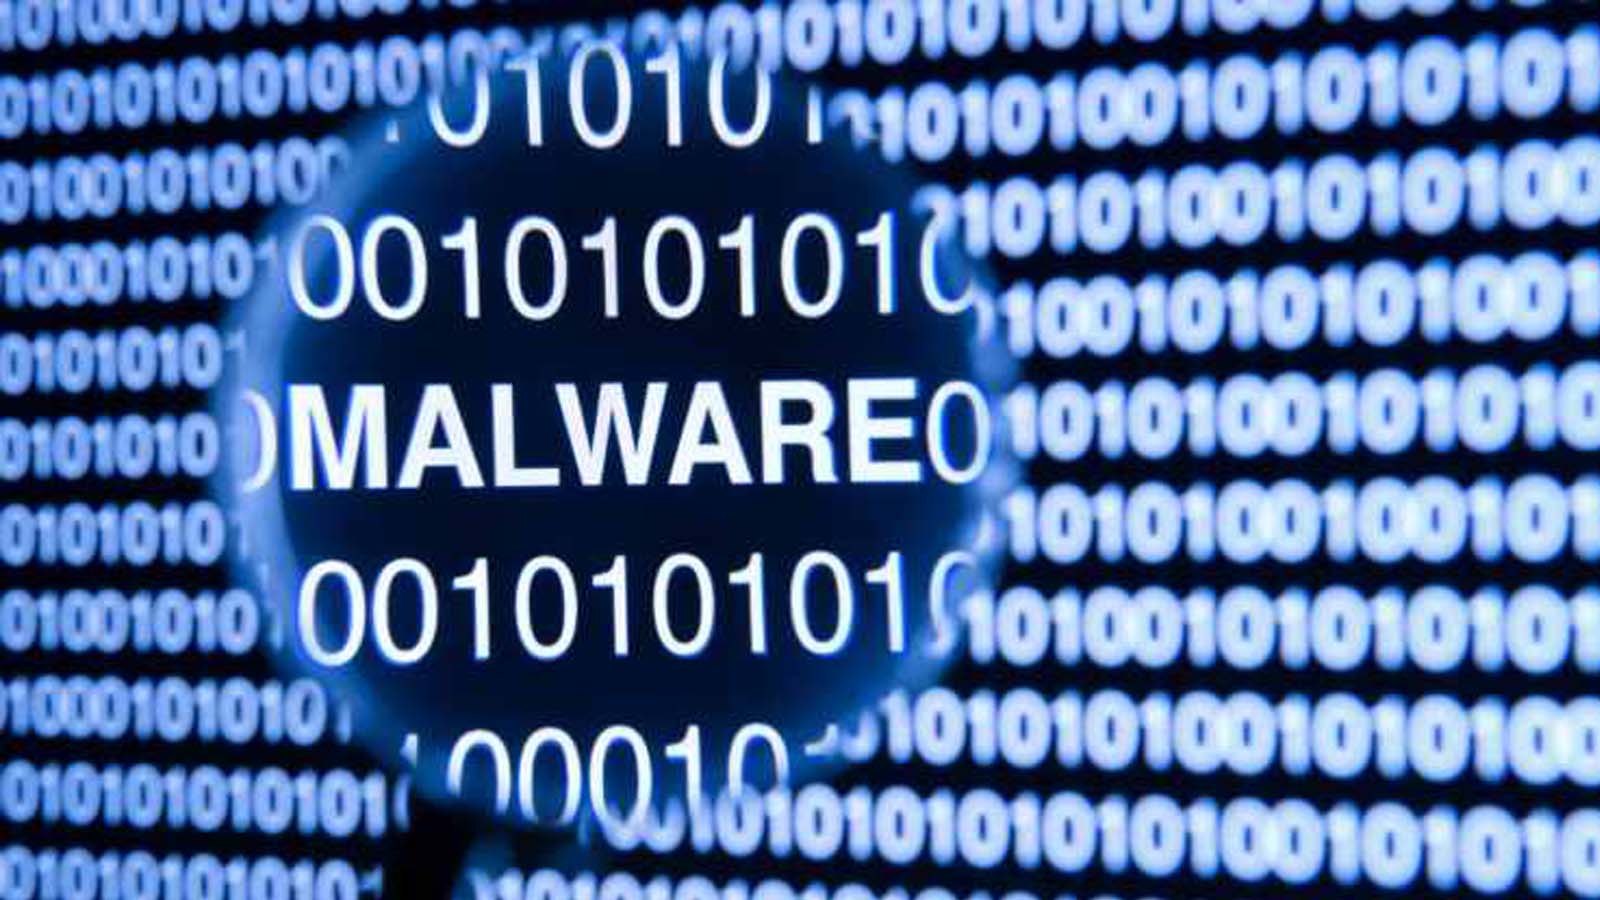 Scopriamo insieme il percorso per individuare malware senza l'installazione di software aggiuntivi